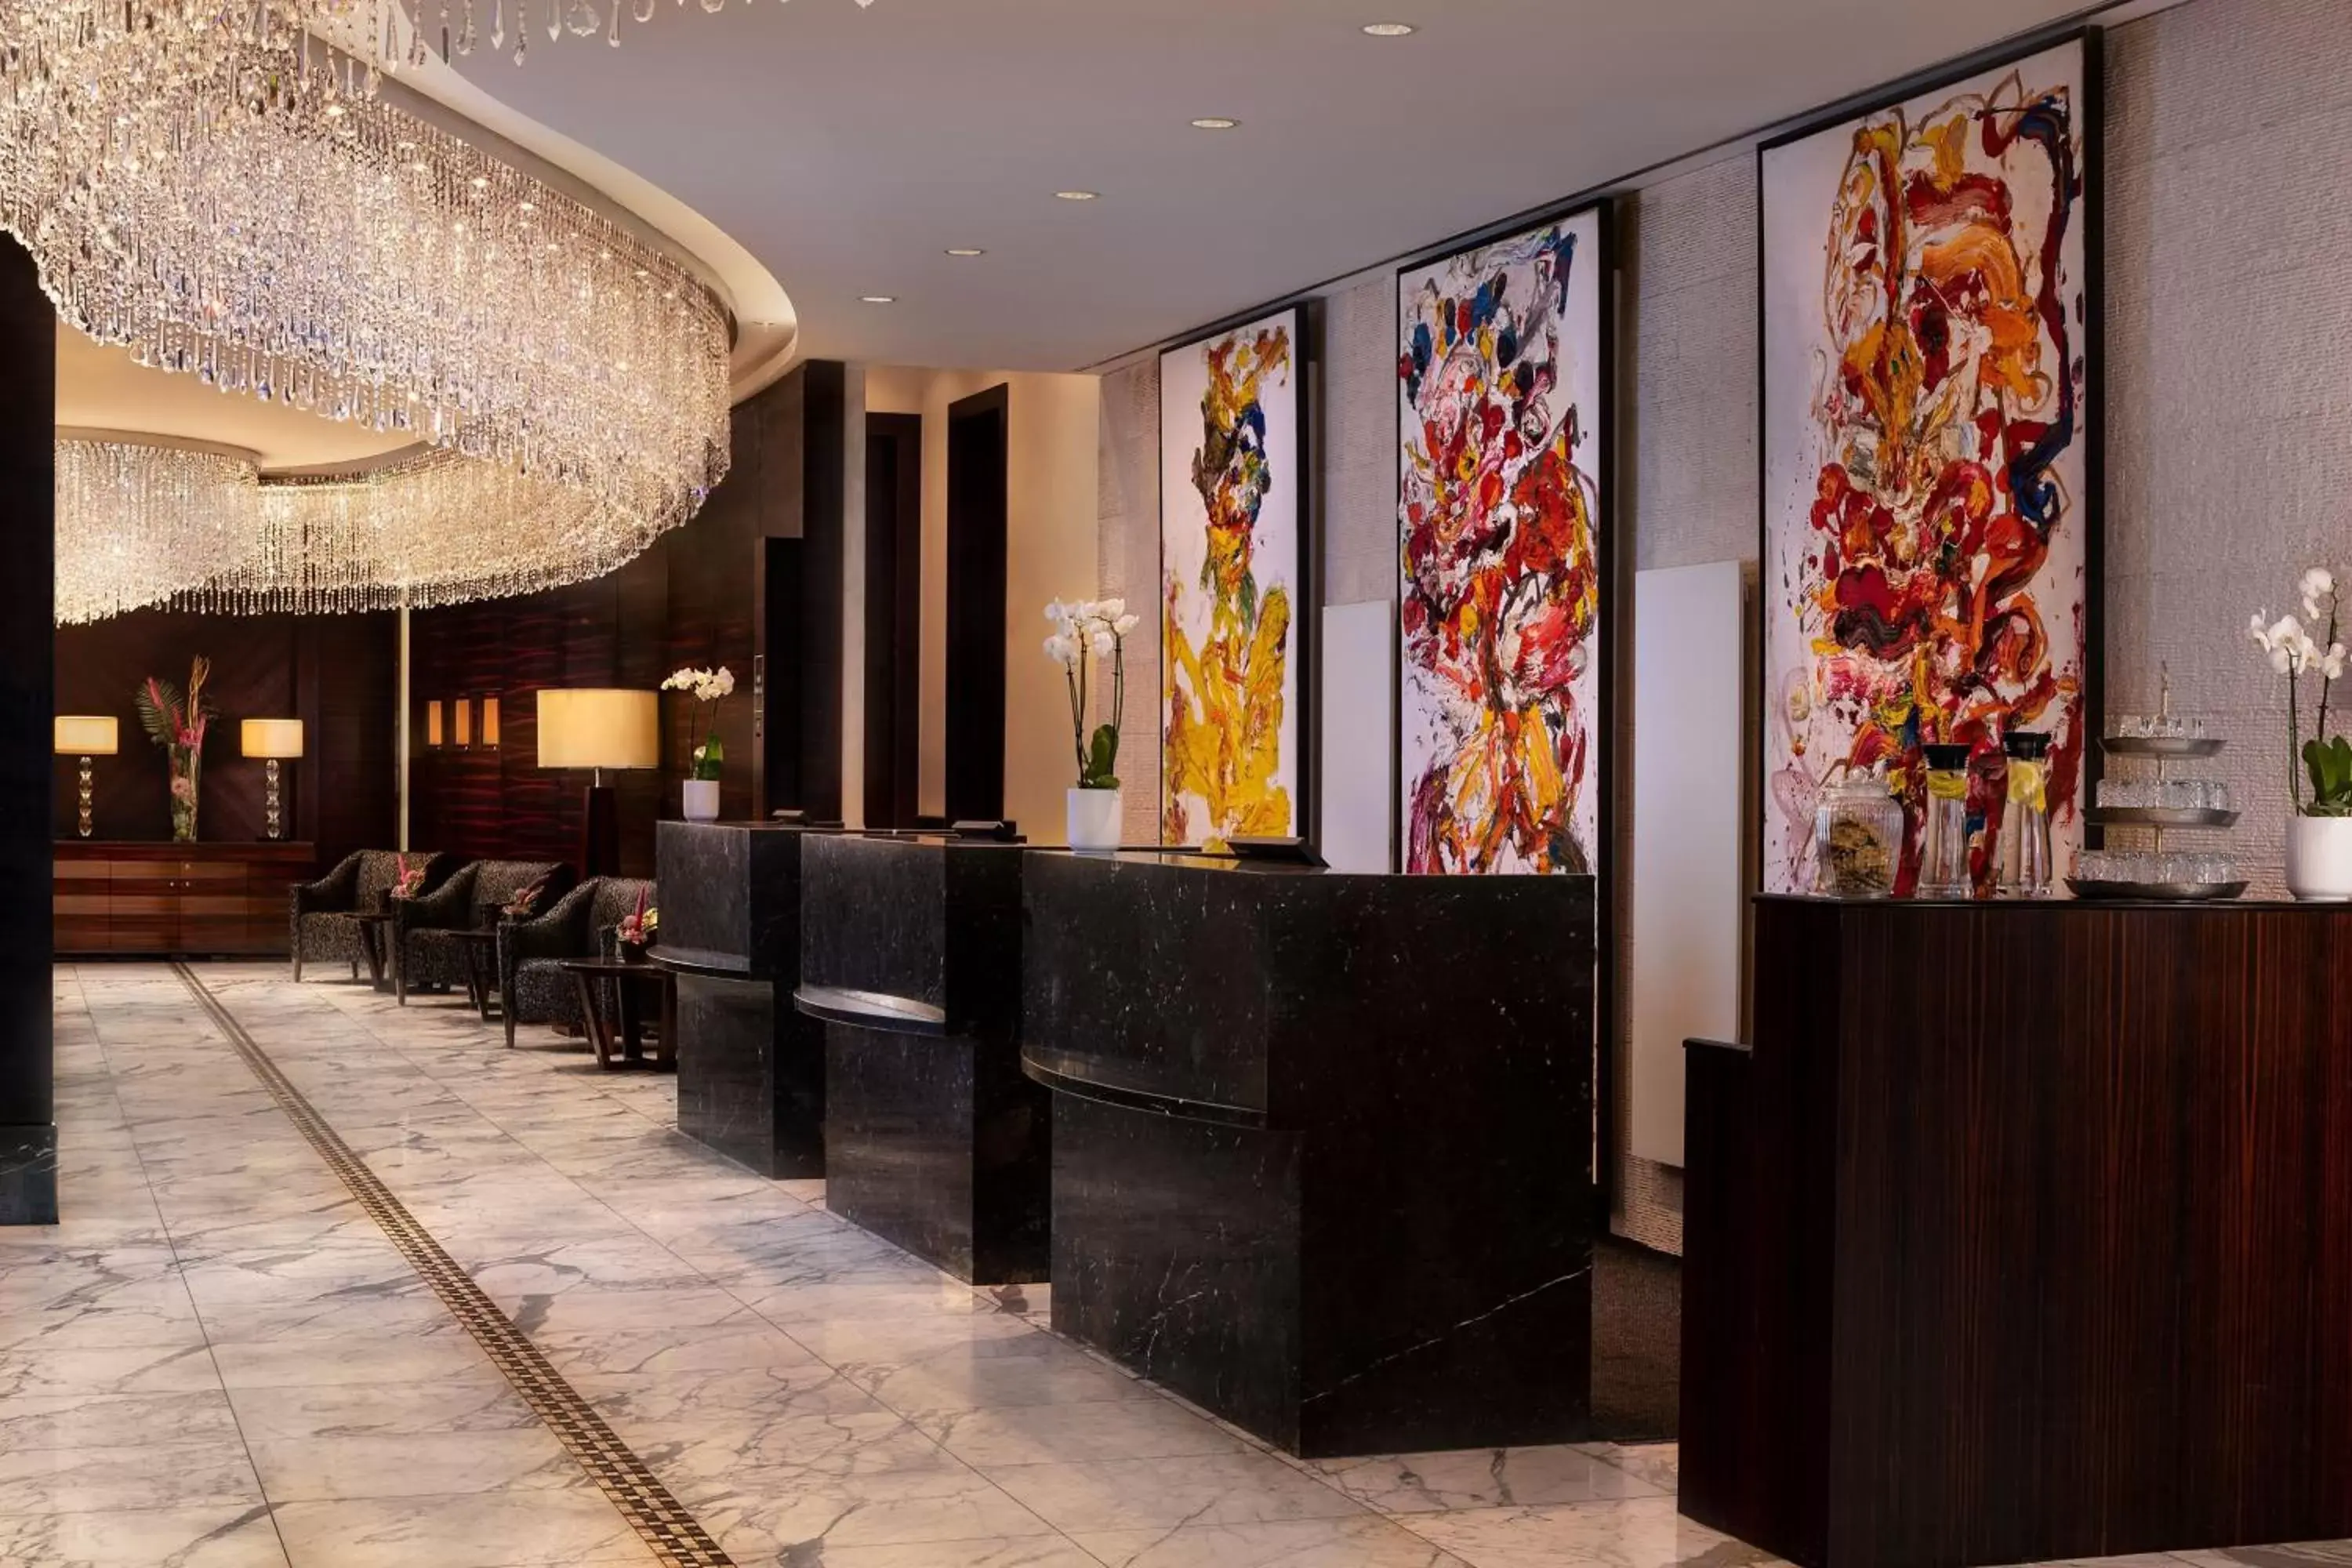 Lobby or reception, Lobby/Reception in JW Marriott Hotel Frankfurt